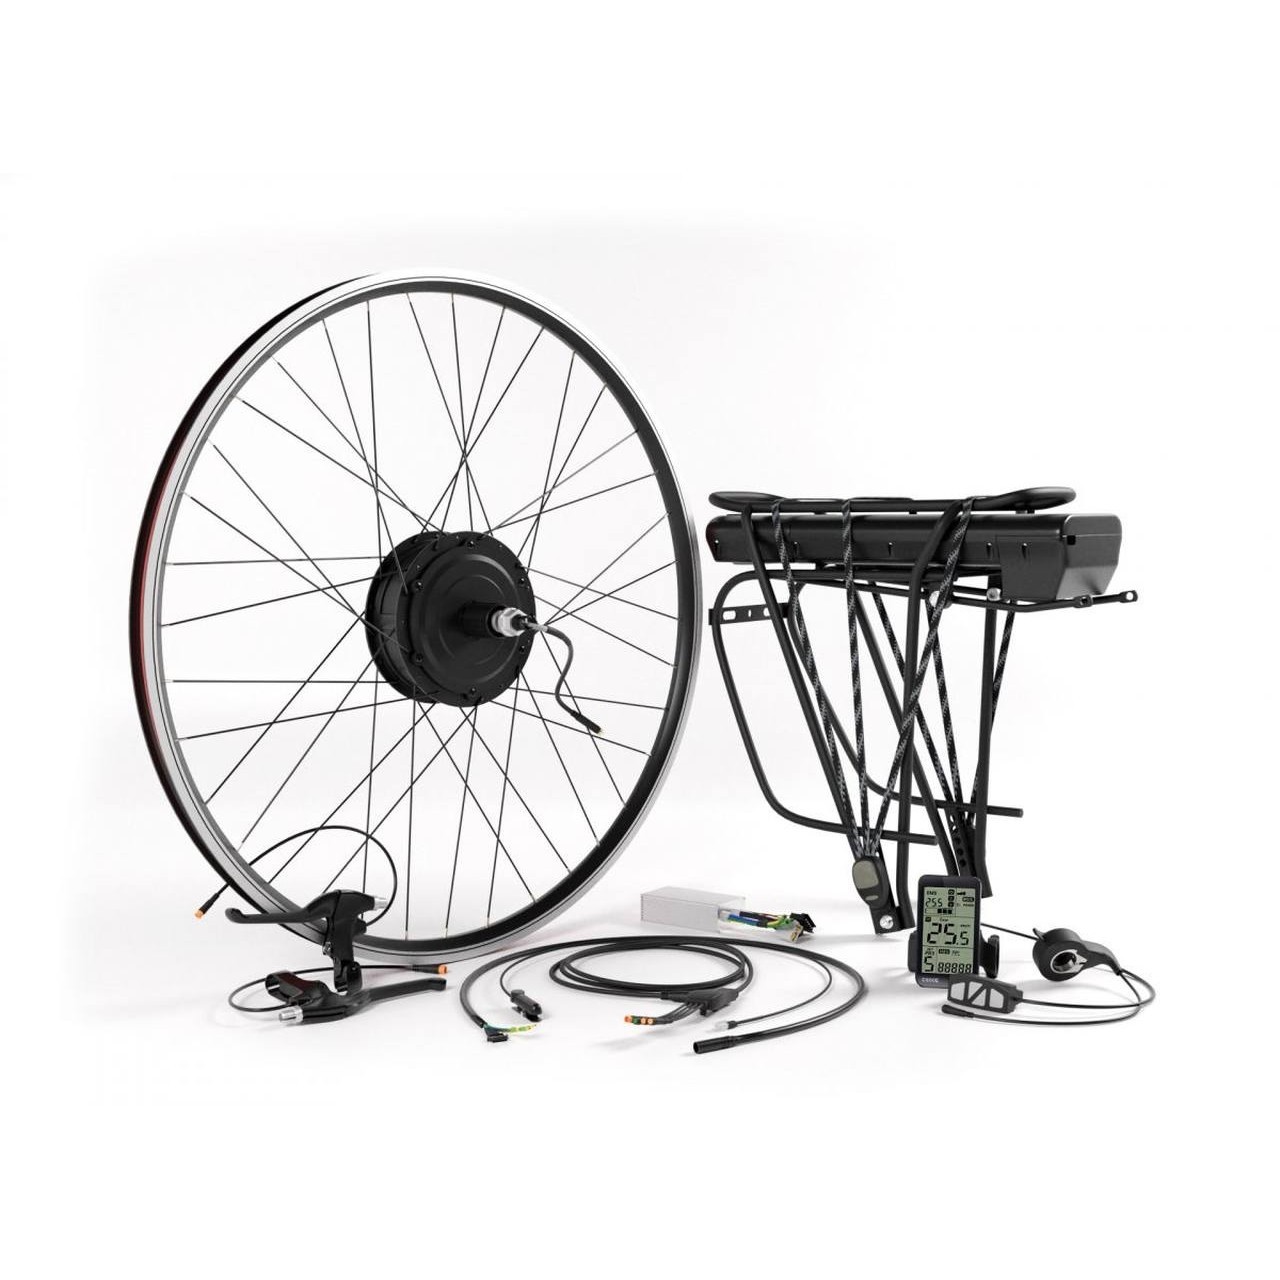 Ecobike - Zestaw do konwersji roweru na tył 350W (bateria bagażnikowa 17,5 Ah)